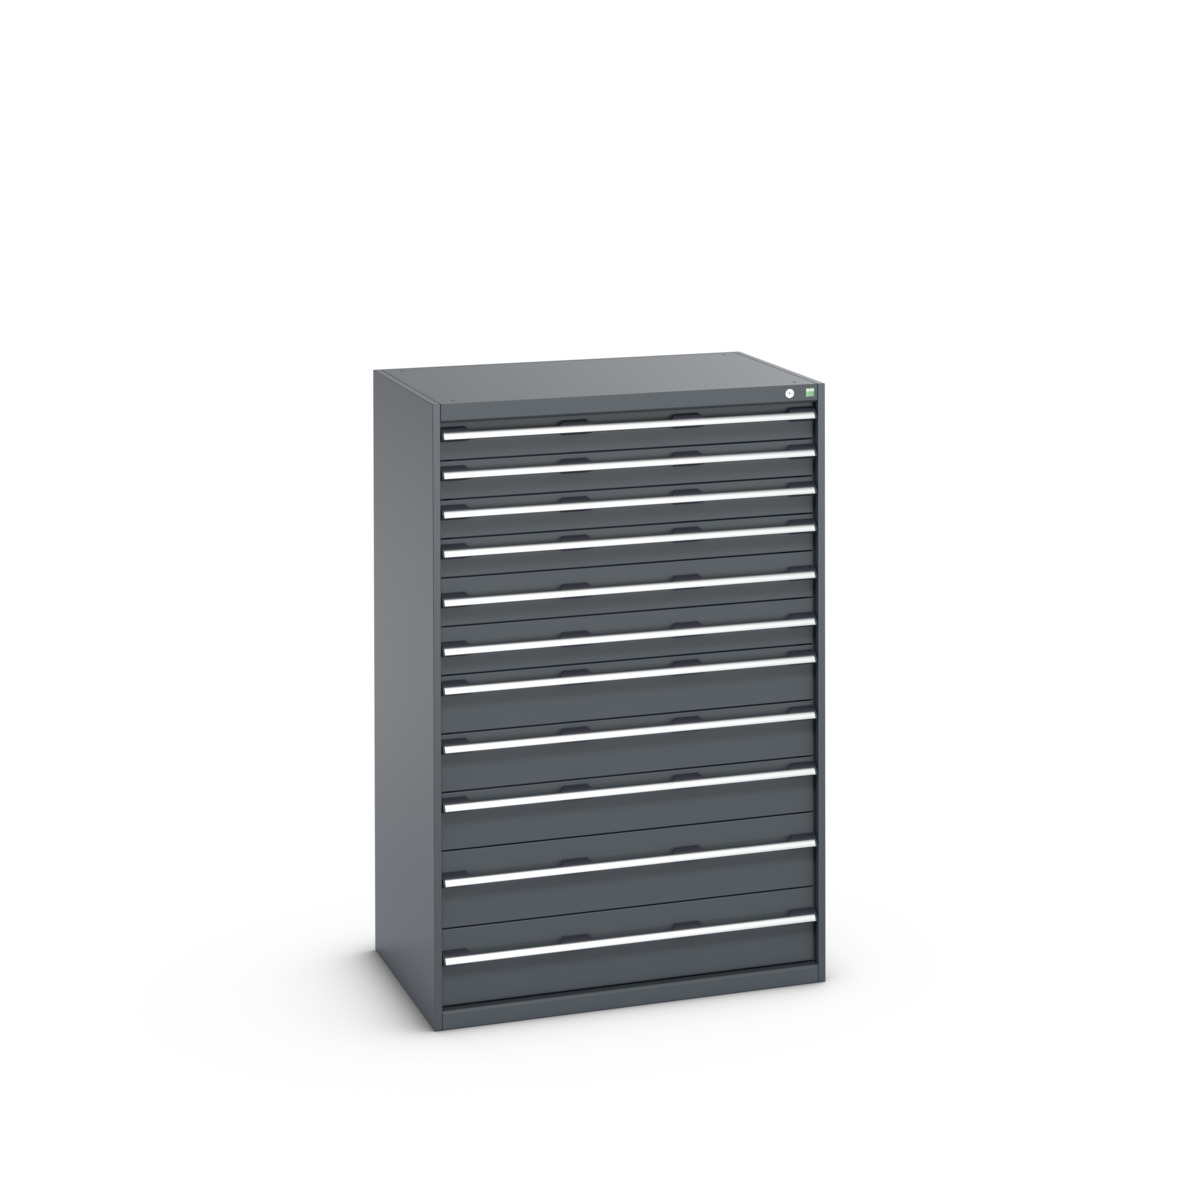 40029037.77V - cubio drawer cabinet